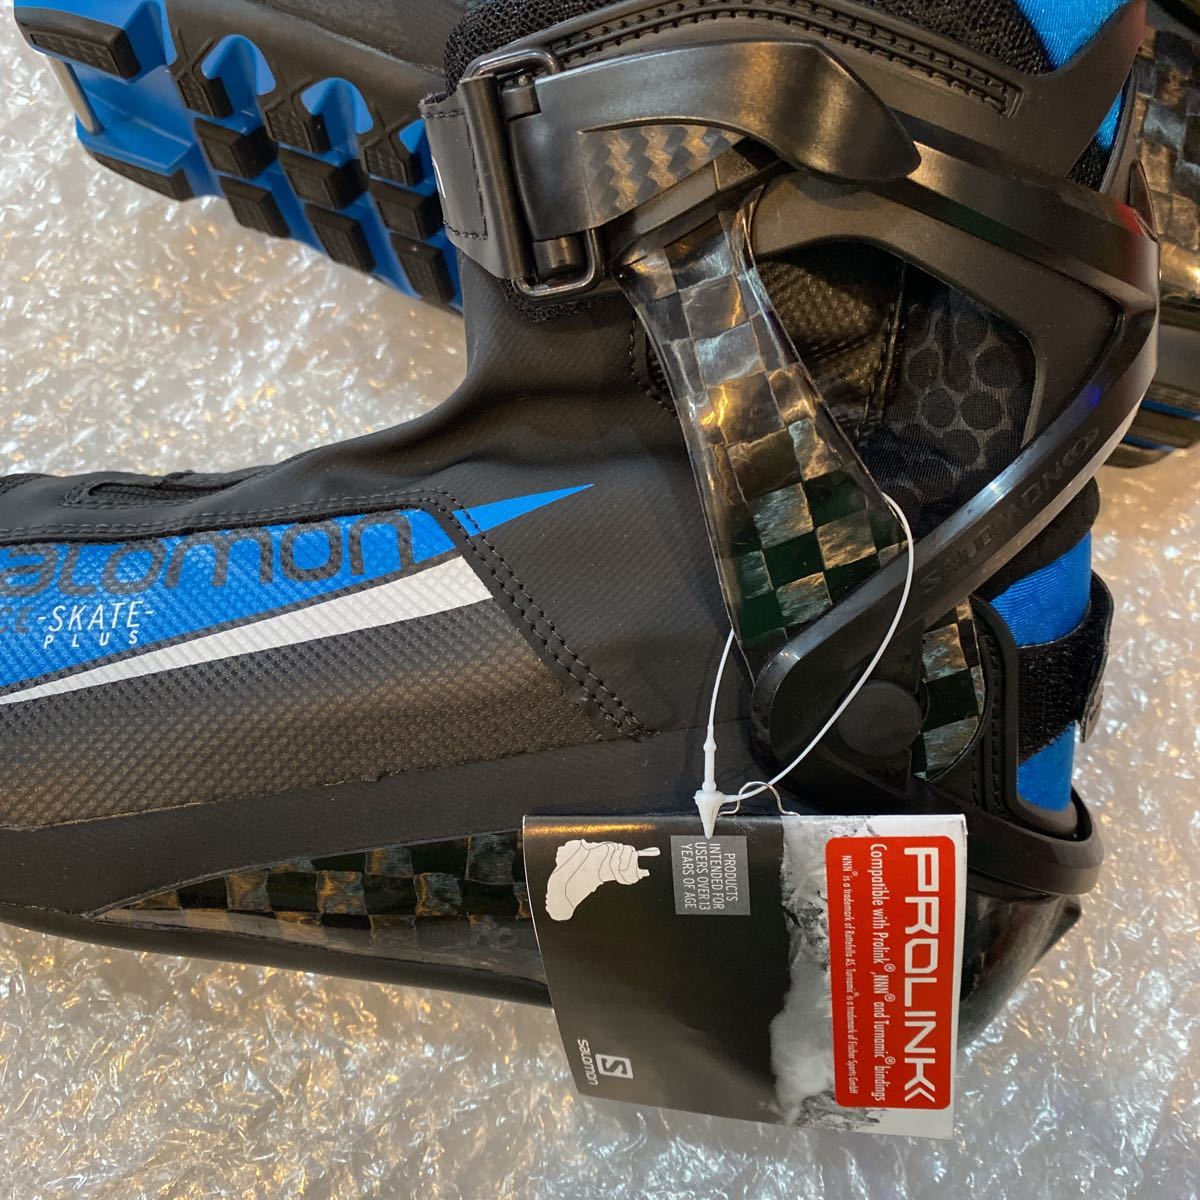  Salomon внедорожник ботинки 27.5 см S/RACE skate плюс Pro ссылка новый товар не использовался 